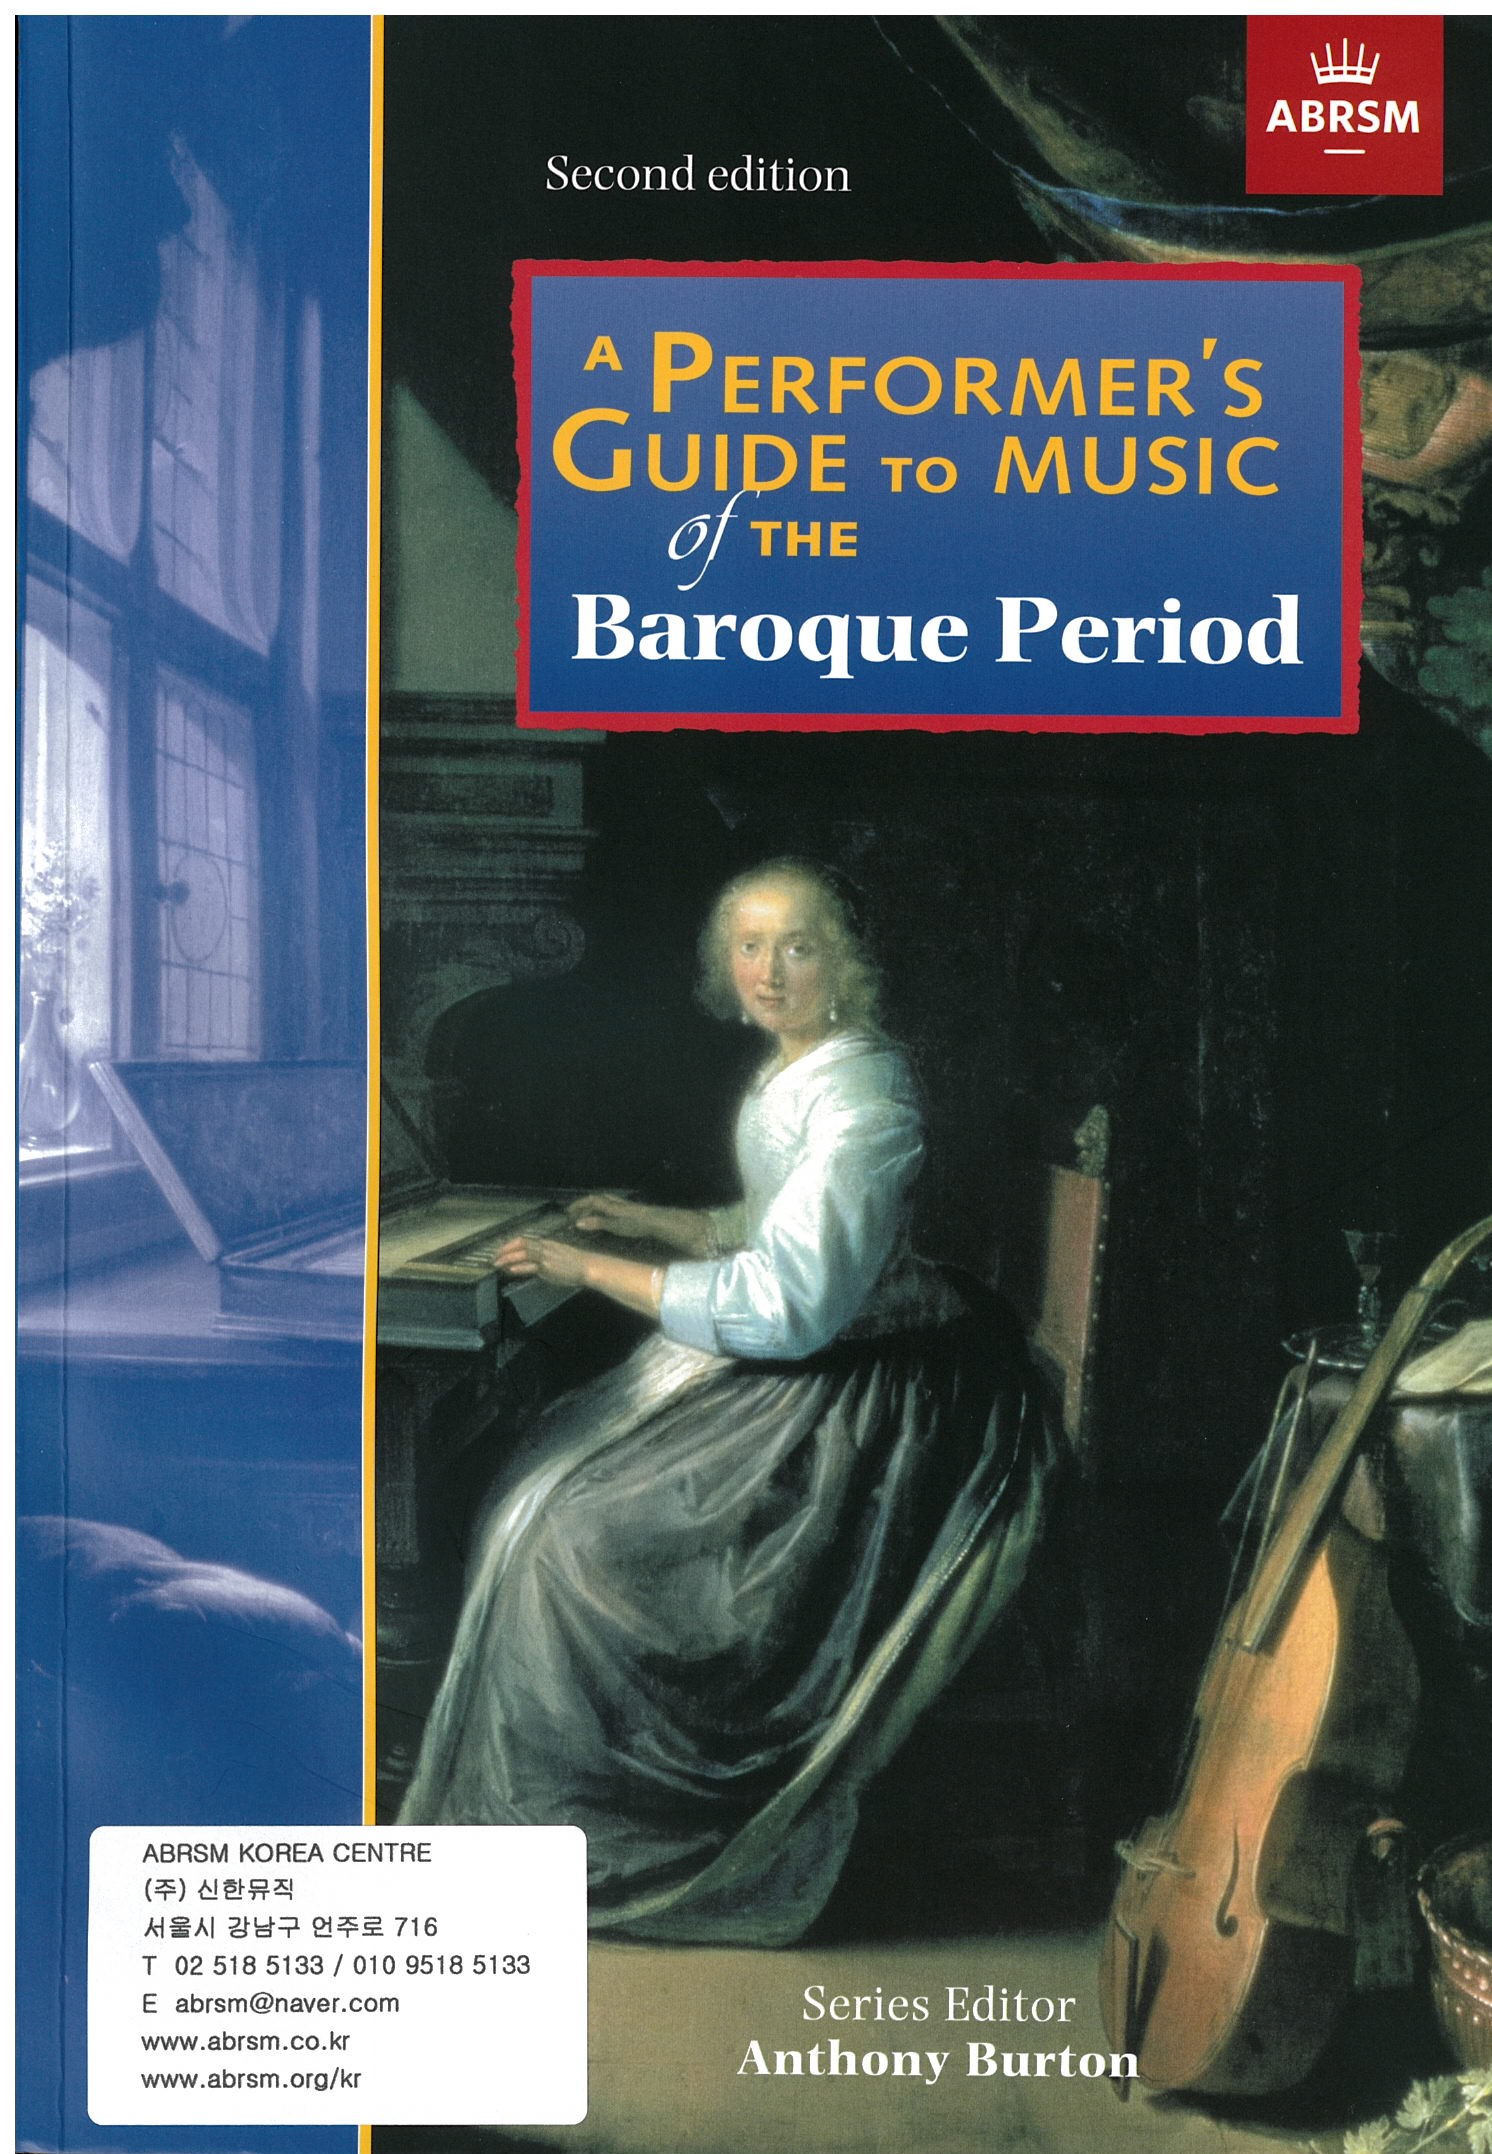 연주자를 위한 가이드: 바로크시대(2판, CD 없음)_A Performer's Guide to Music of the Baroque Period (Second edition) without CD